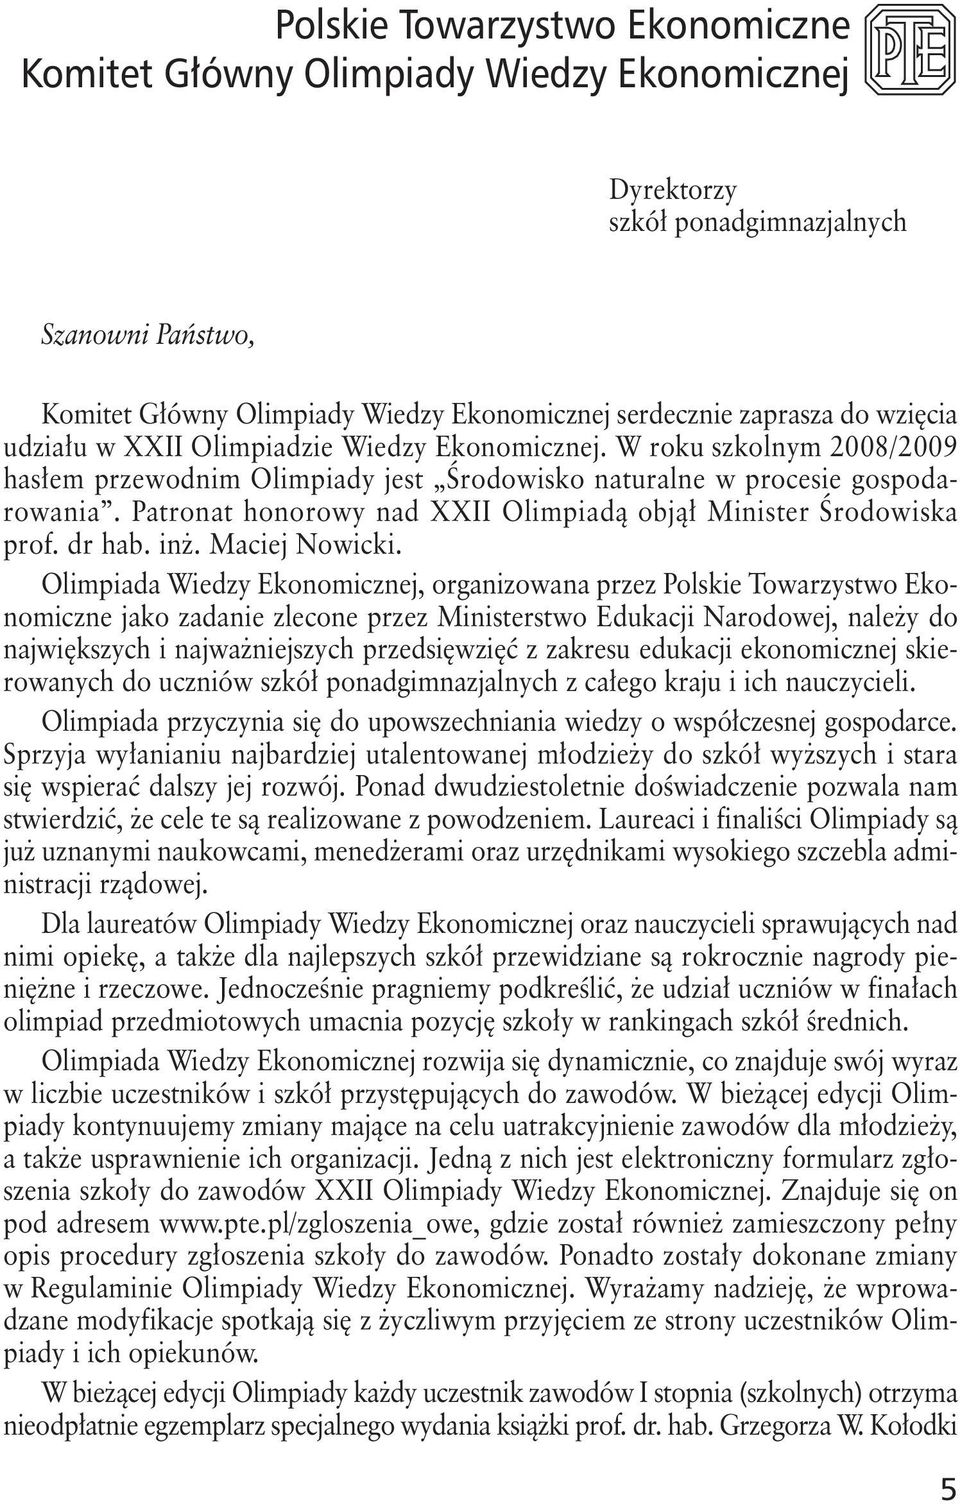 Patronat honorowy nad XXII Olimpiadą objął Minister Środowiska prof. dr hab. inż. Maciej Nowicki.